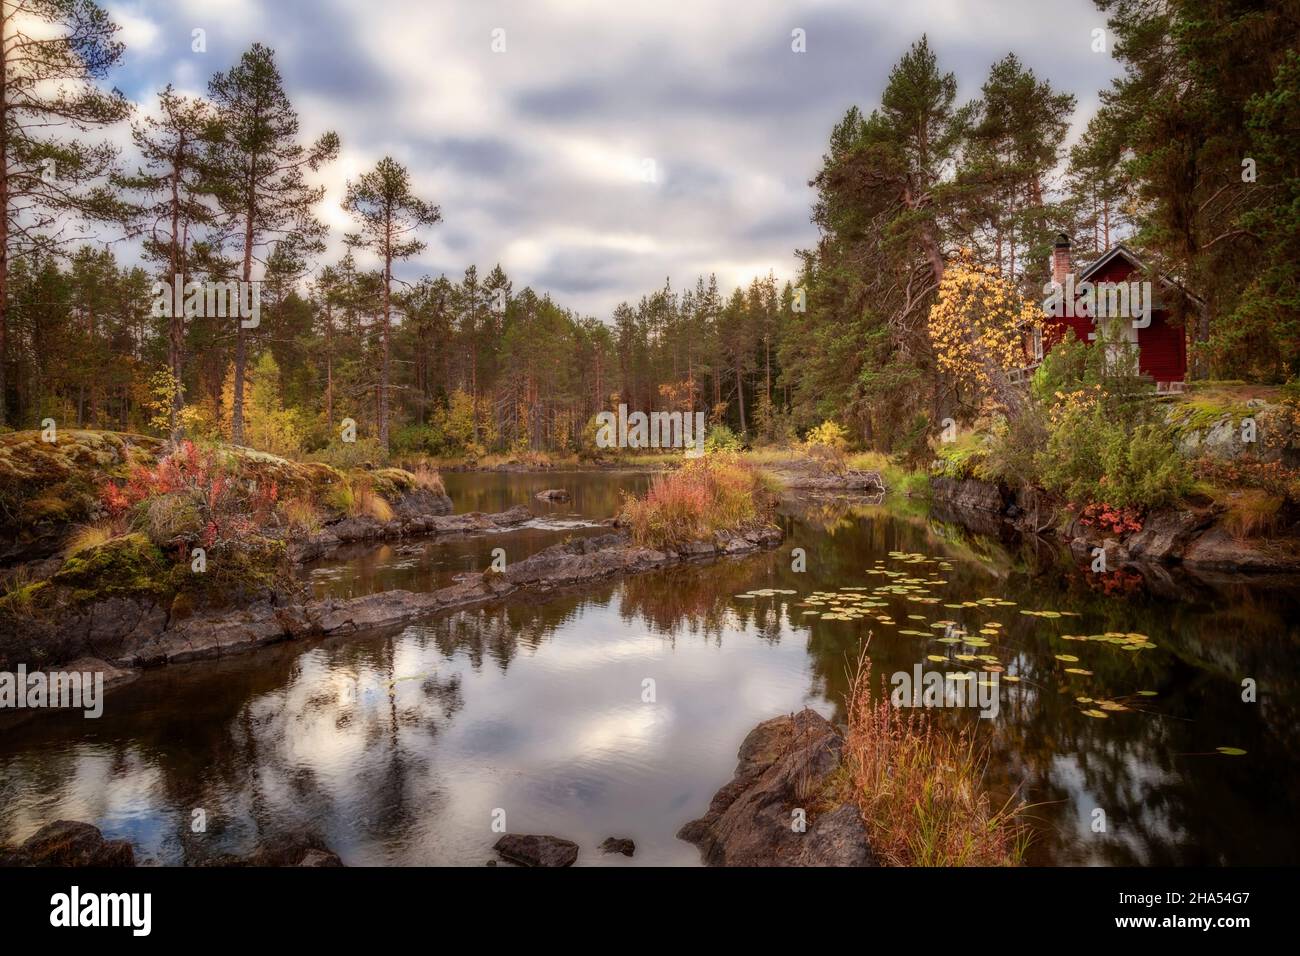 cottage, foresta, e il paesaggio del lago in svezia Foto Stock